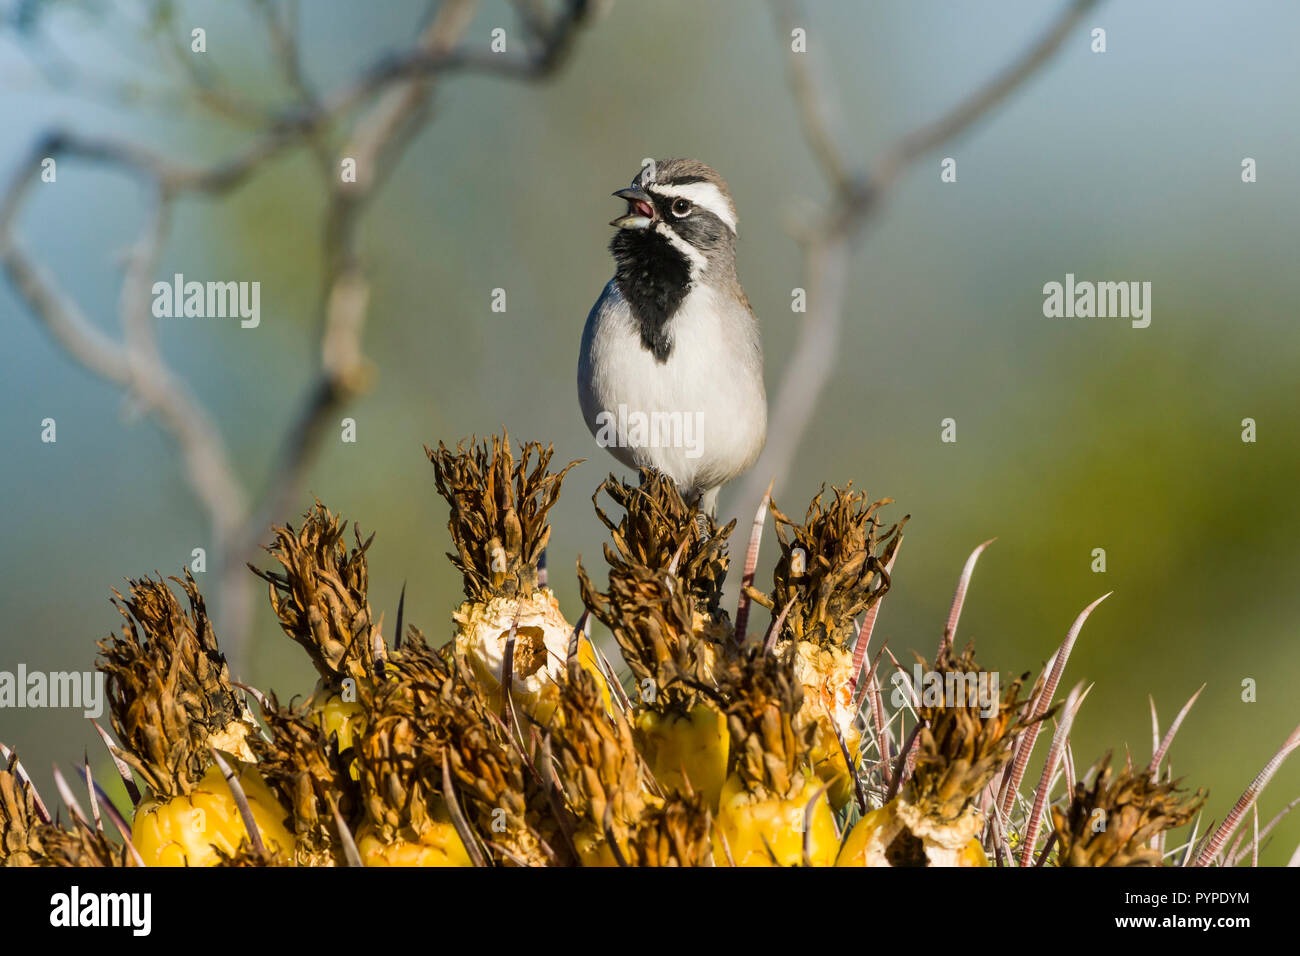 Ein Black-throated Sparrow (Amphispiza bilineata) männlichen Gesang von einem Barsch auf die Früchte einer Angelhaken Barrel Kaktus (Ferocactus wislizeni) im Sono Stockfoto